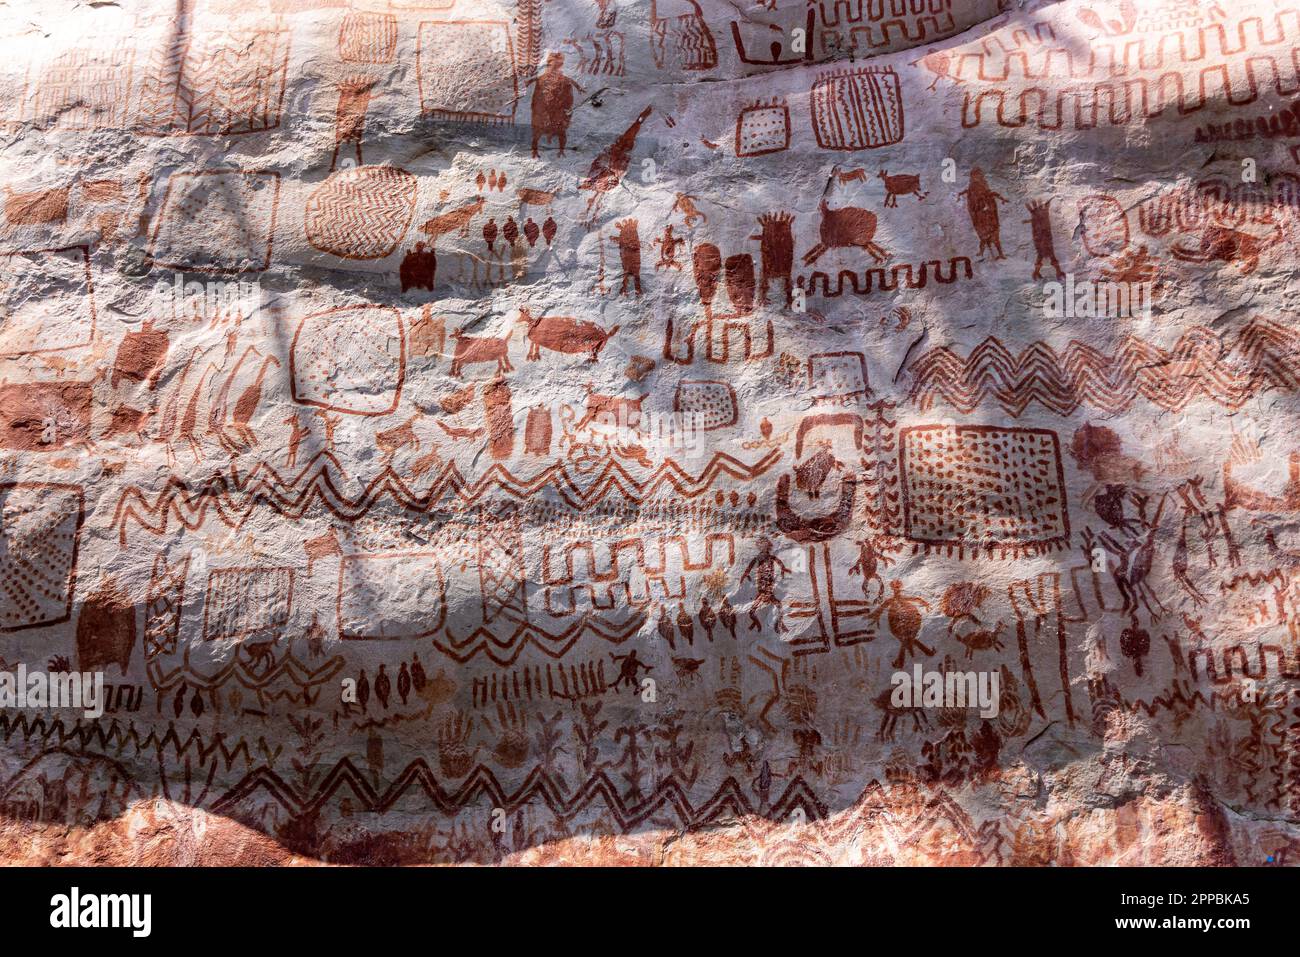 Pinturas rupestres en Cerro Azul en el Parque Nacional Chiribiquete, patrimonio de la humanidad por la UNESCO y joya arqueológica de Colombia, ubicado en San Jo Foto de stock